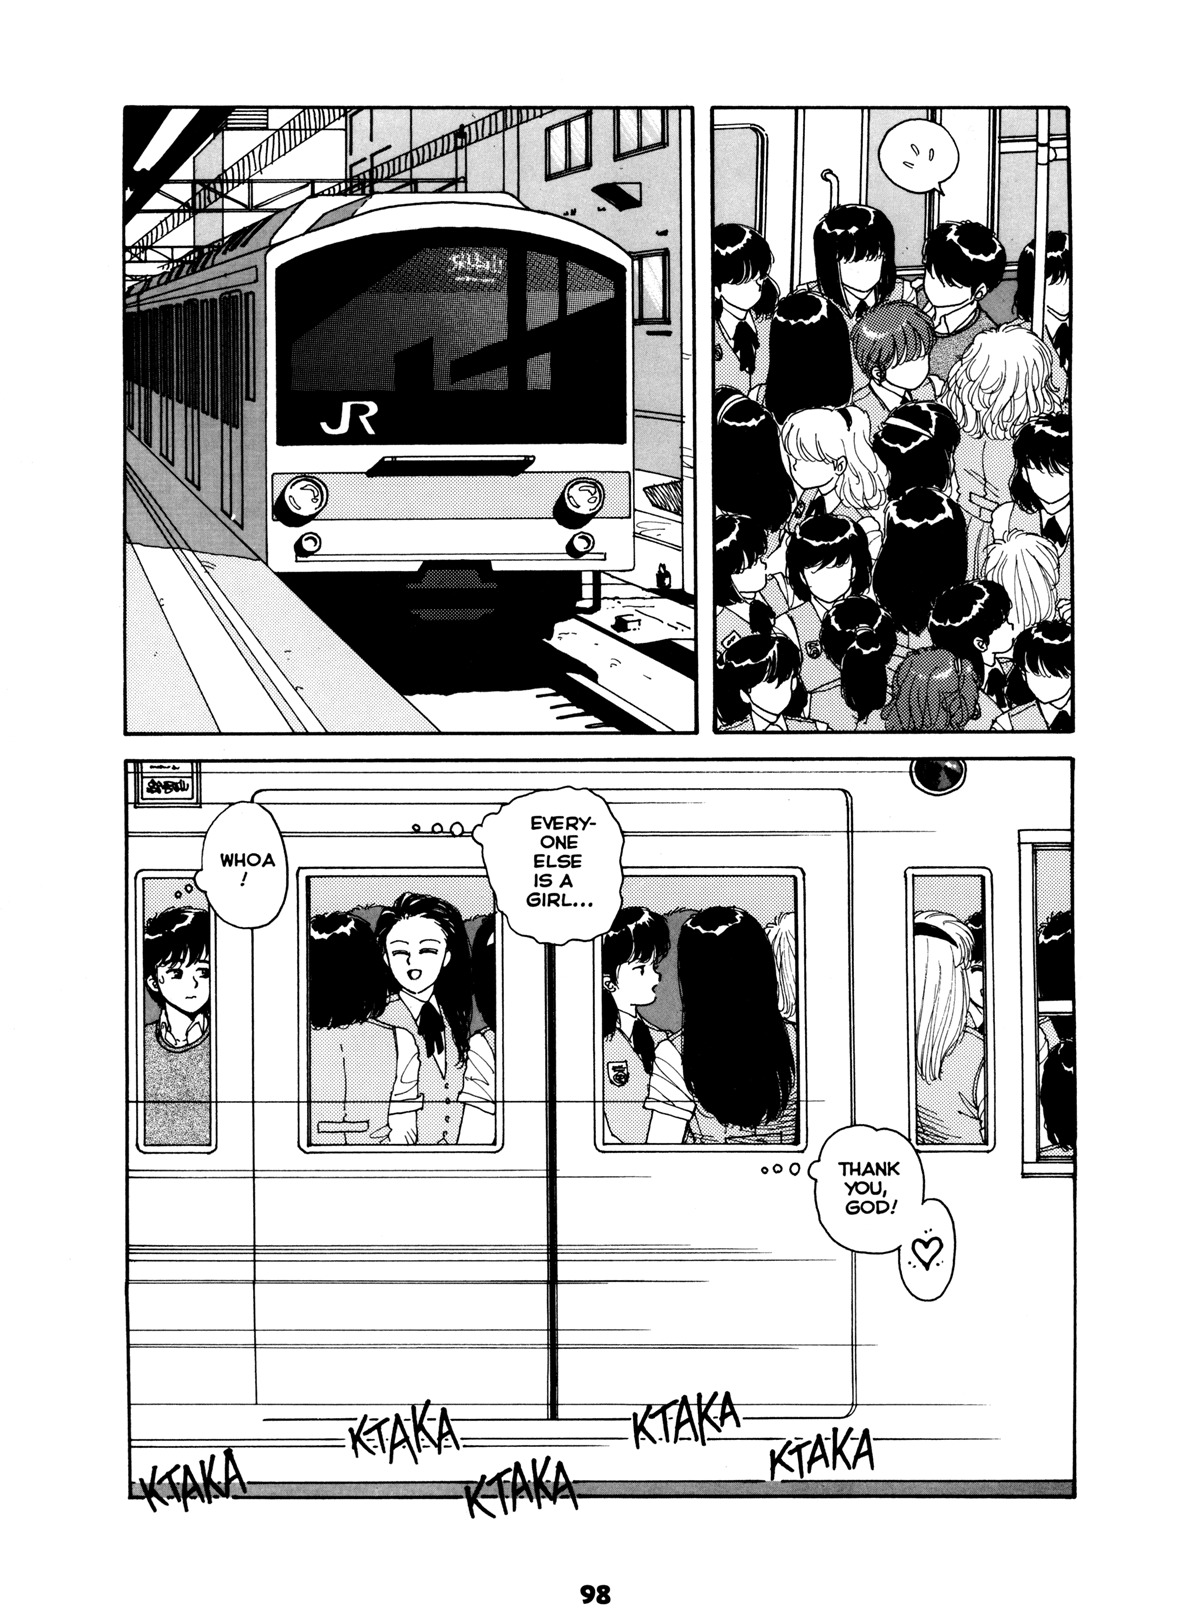 Misty Girl Extreme 97 hentai manga